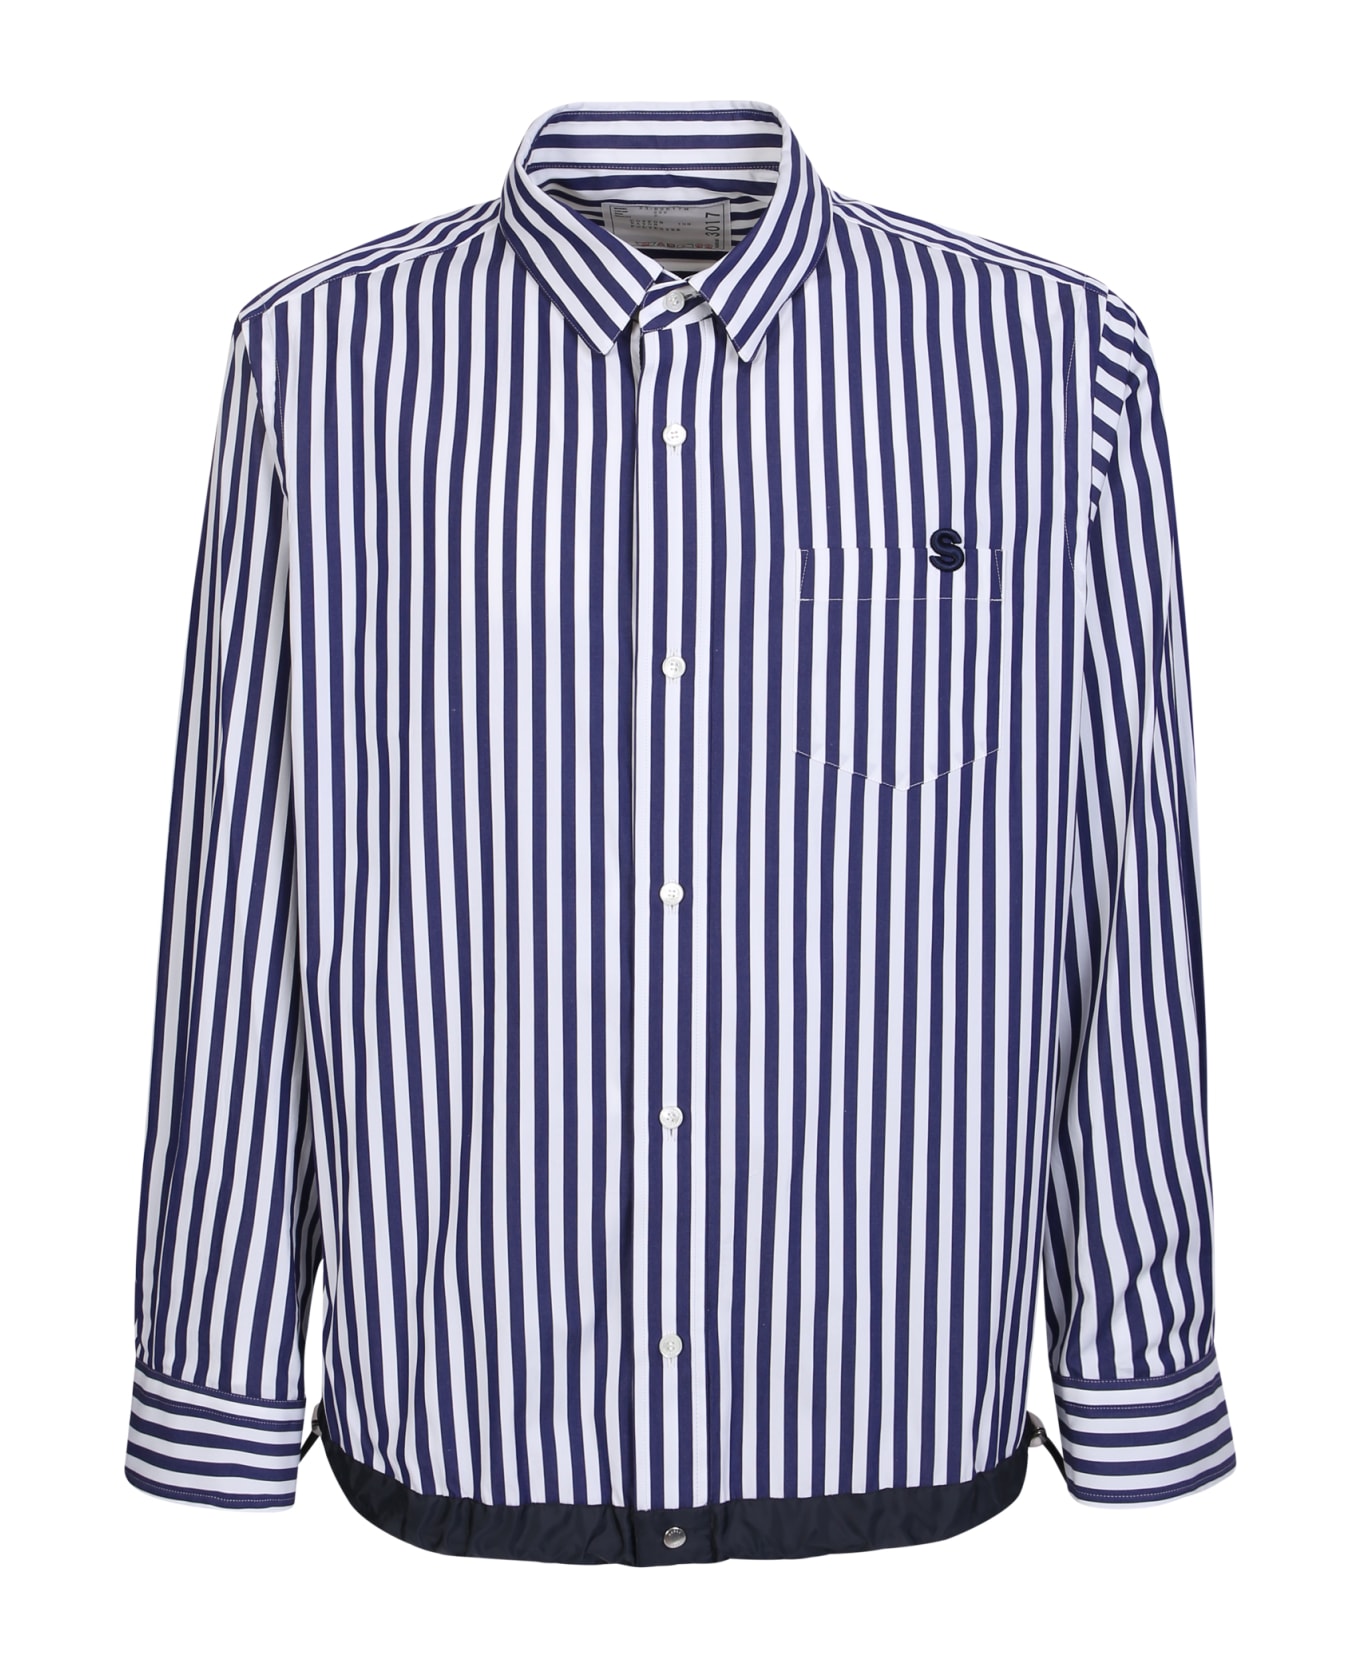 Sacai Striped Shirt With Drawstring Waist Details - Blue